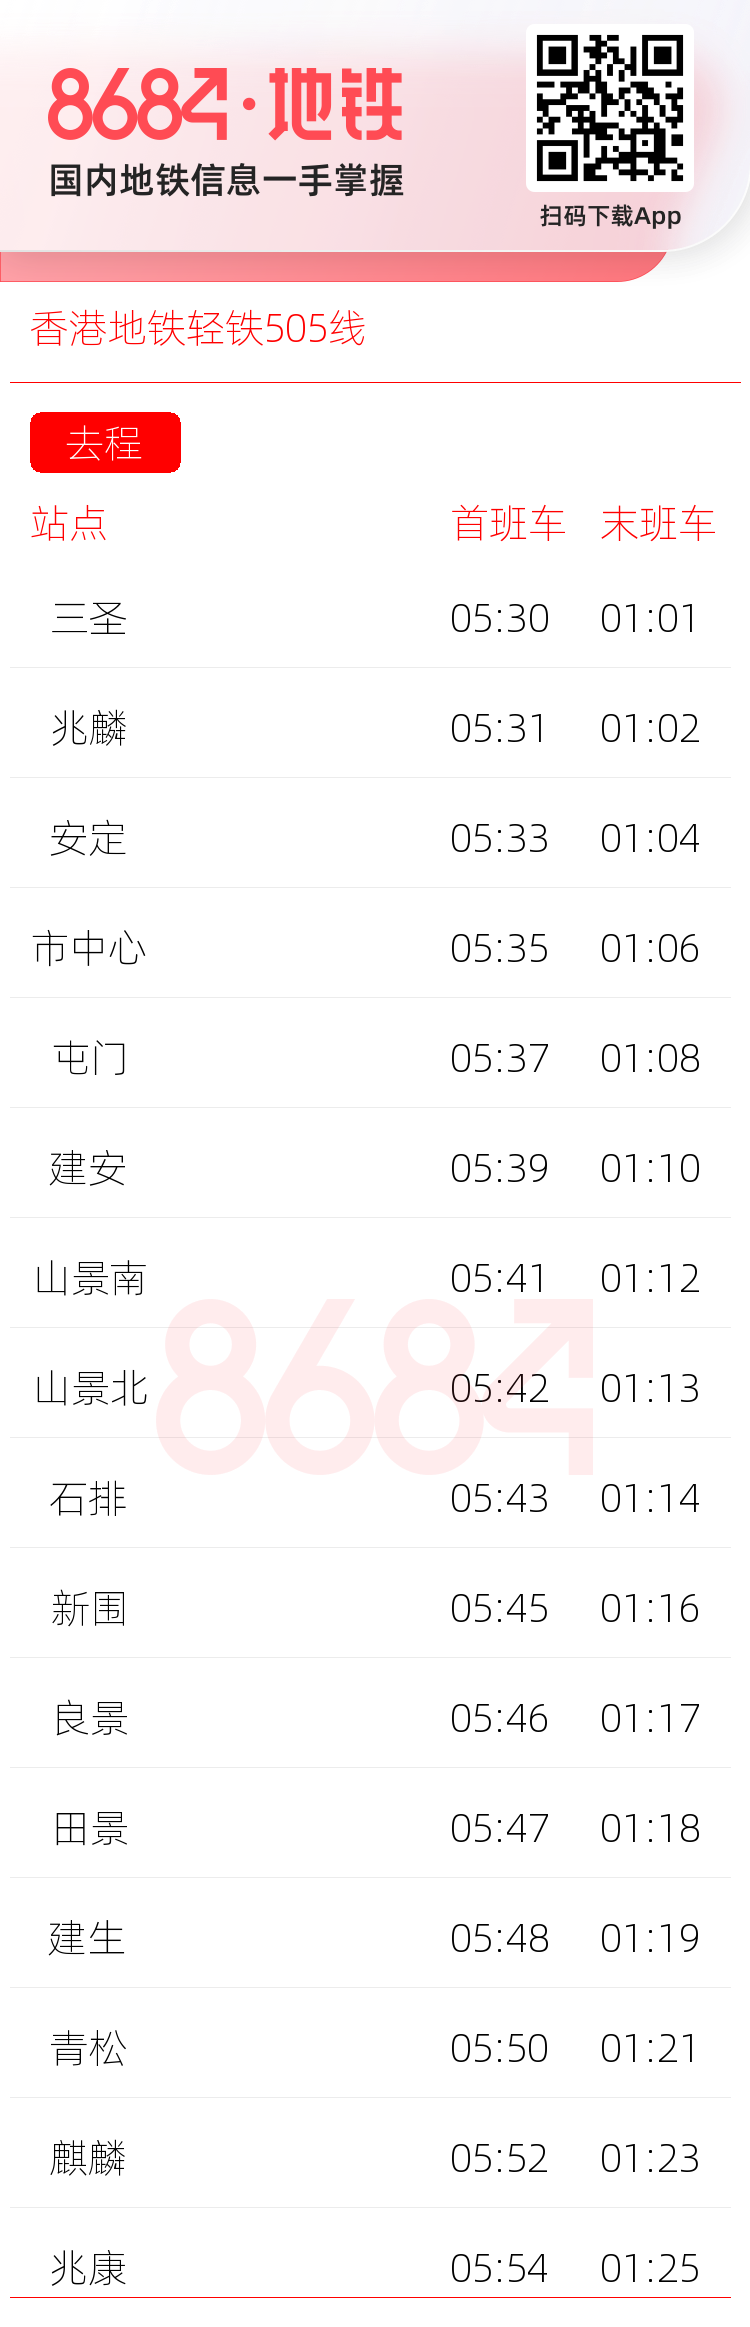 香港地铁轻铁505线运营时间表